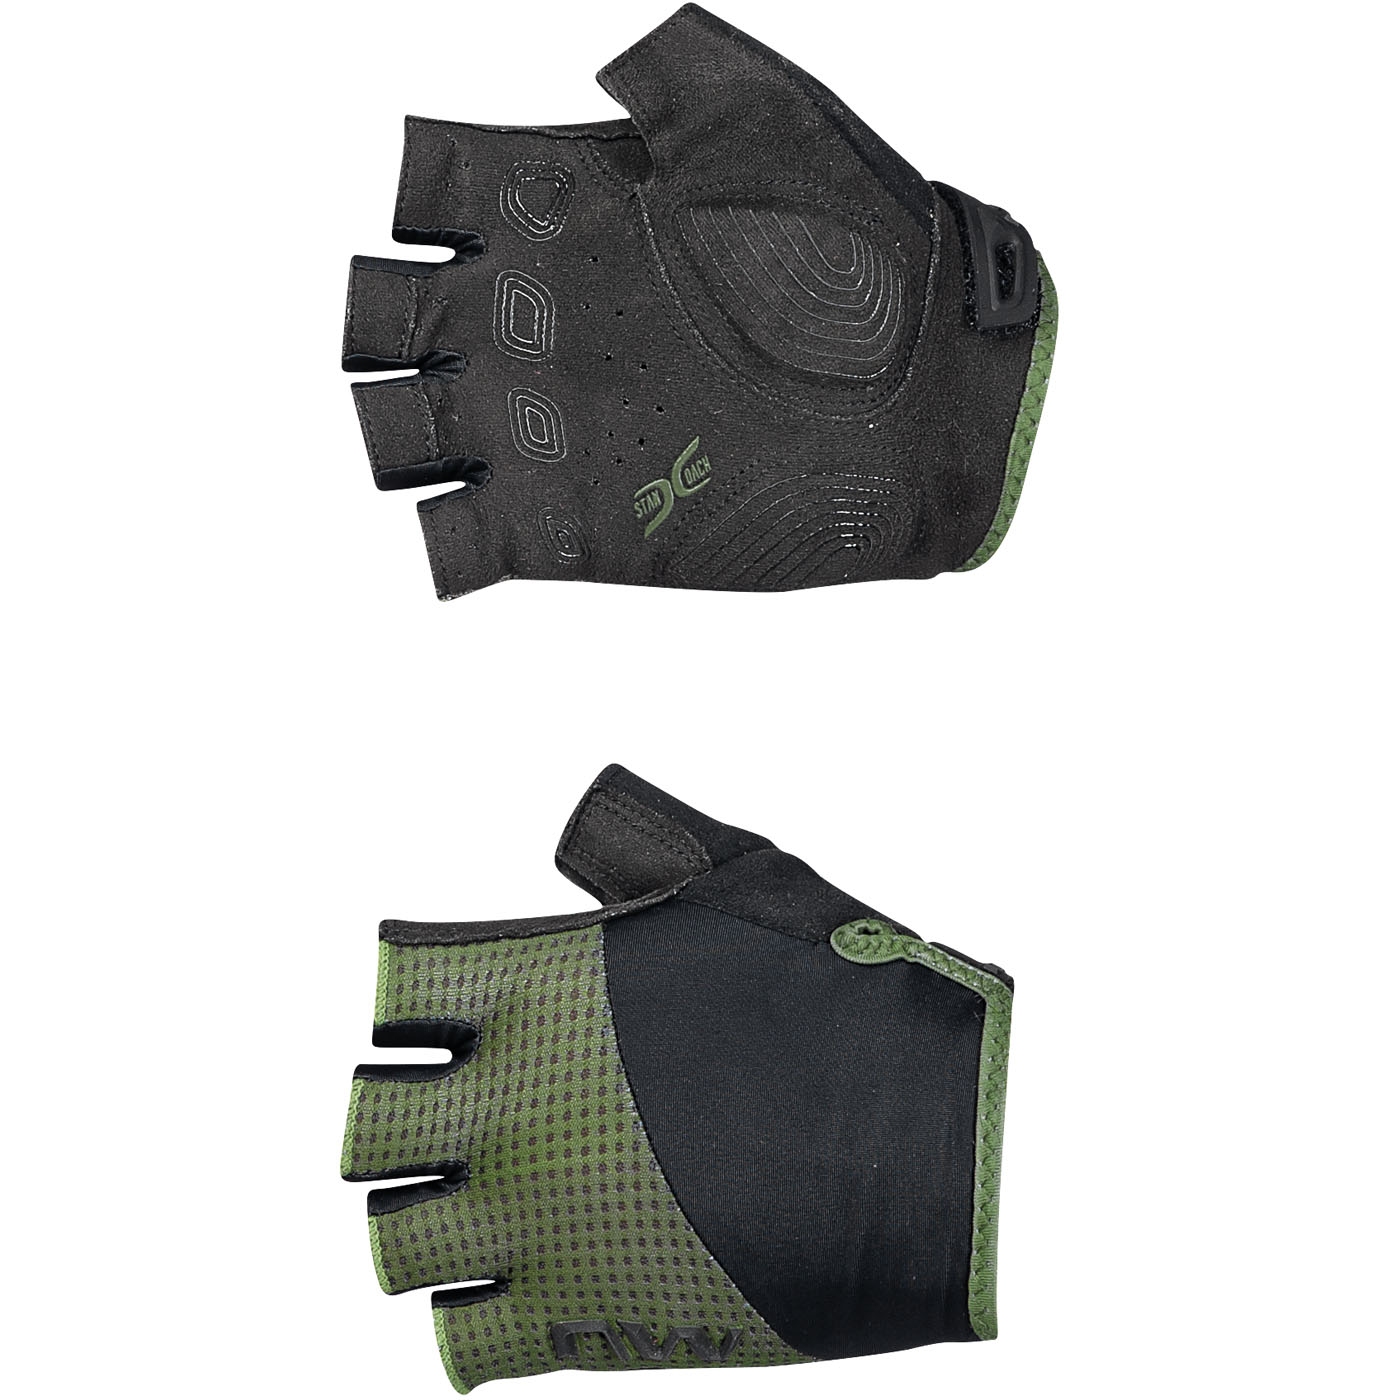 Productfoto van Northwave Fast Handschoenen met Korte Vingers Heren - forest green/zwart 61